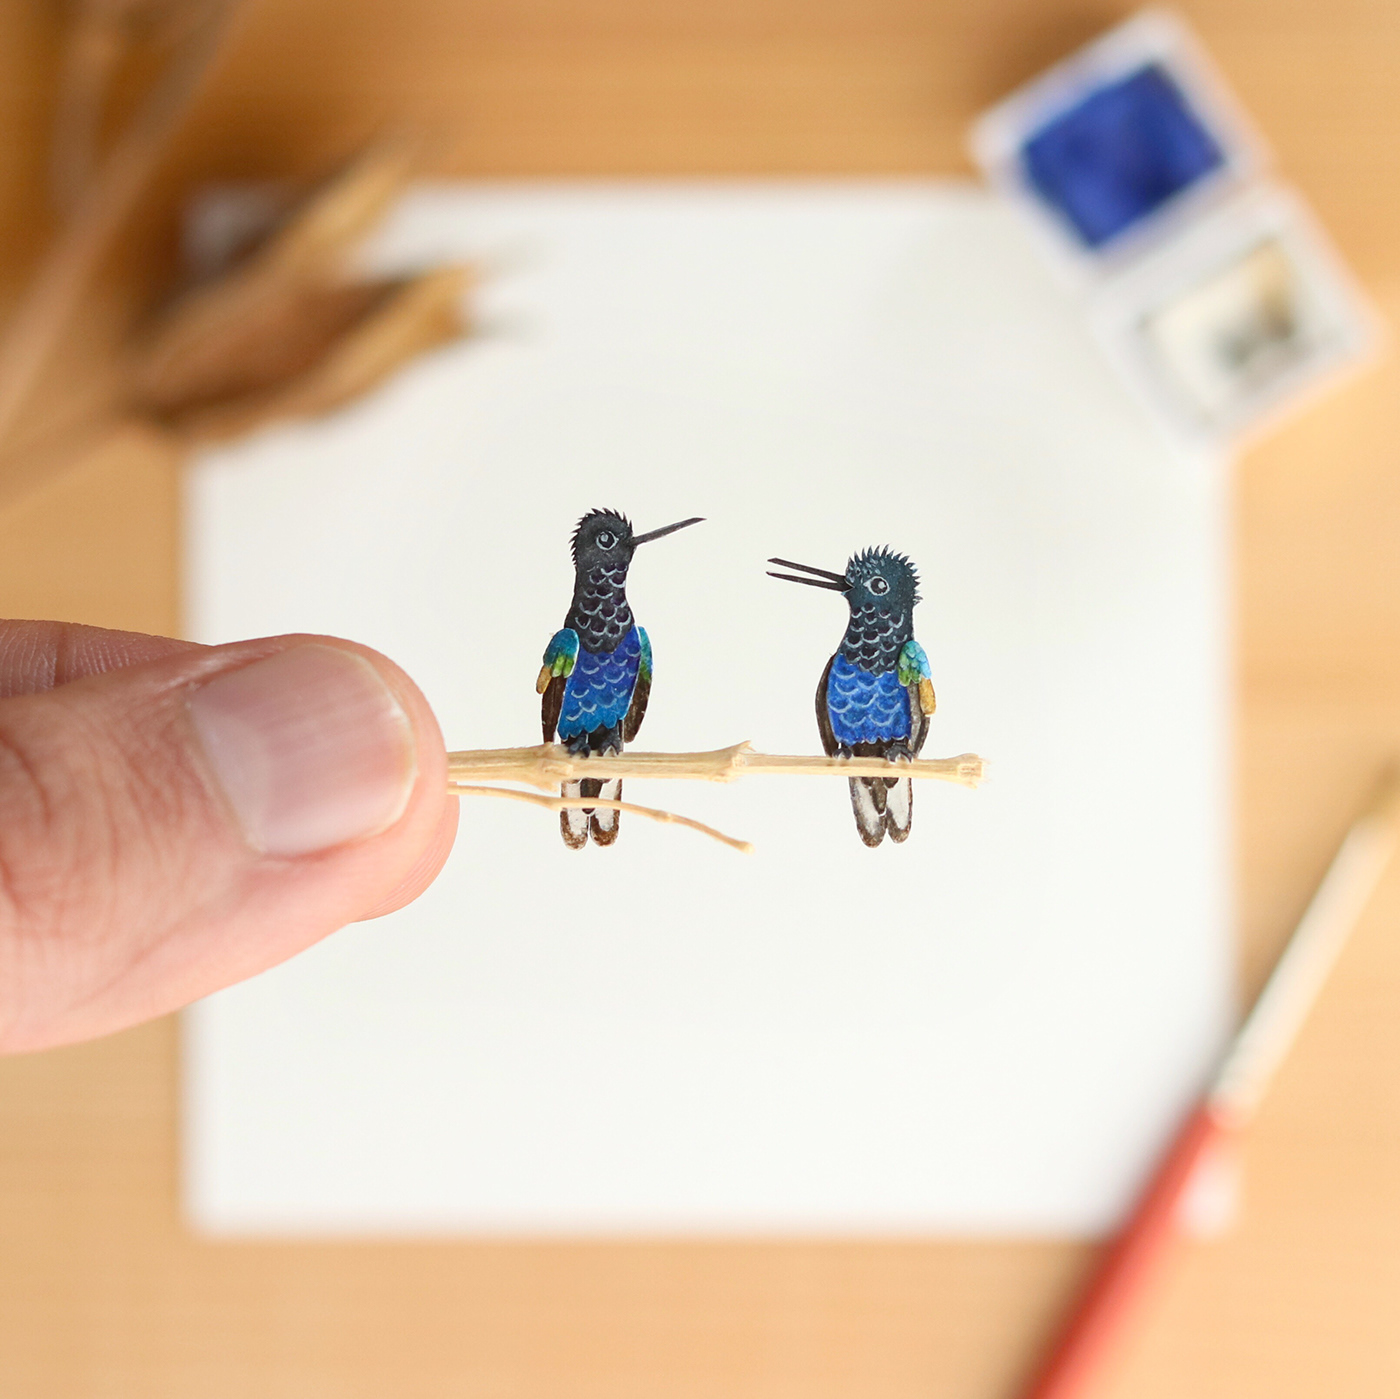 Bechance bird art crafts   ILLUSTRATION  Miniature paper art paper cut Photography  watercolour wildlife